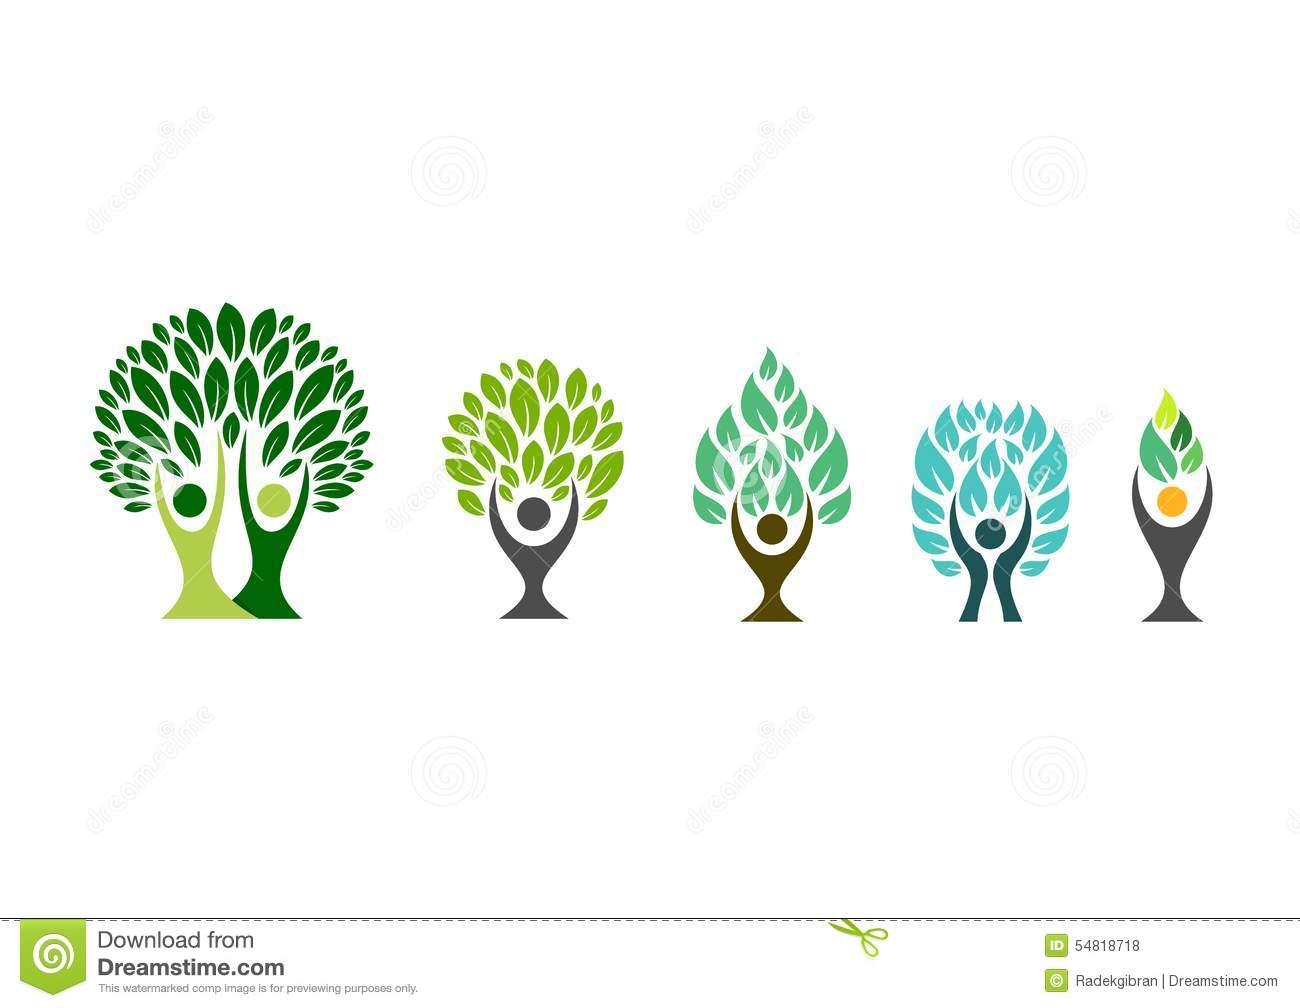 Какое дерево символизирует здоровье?